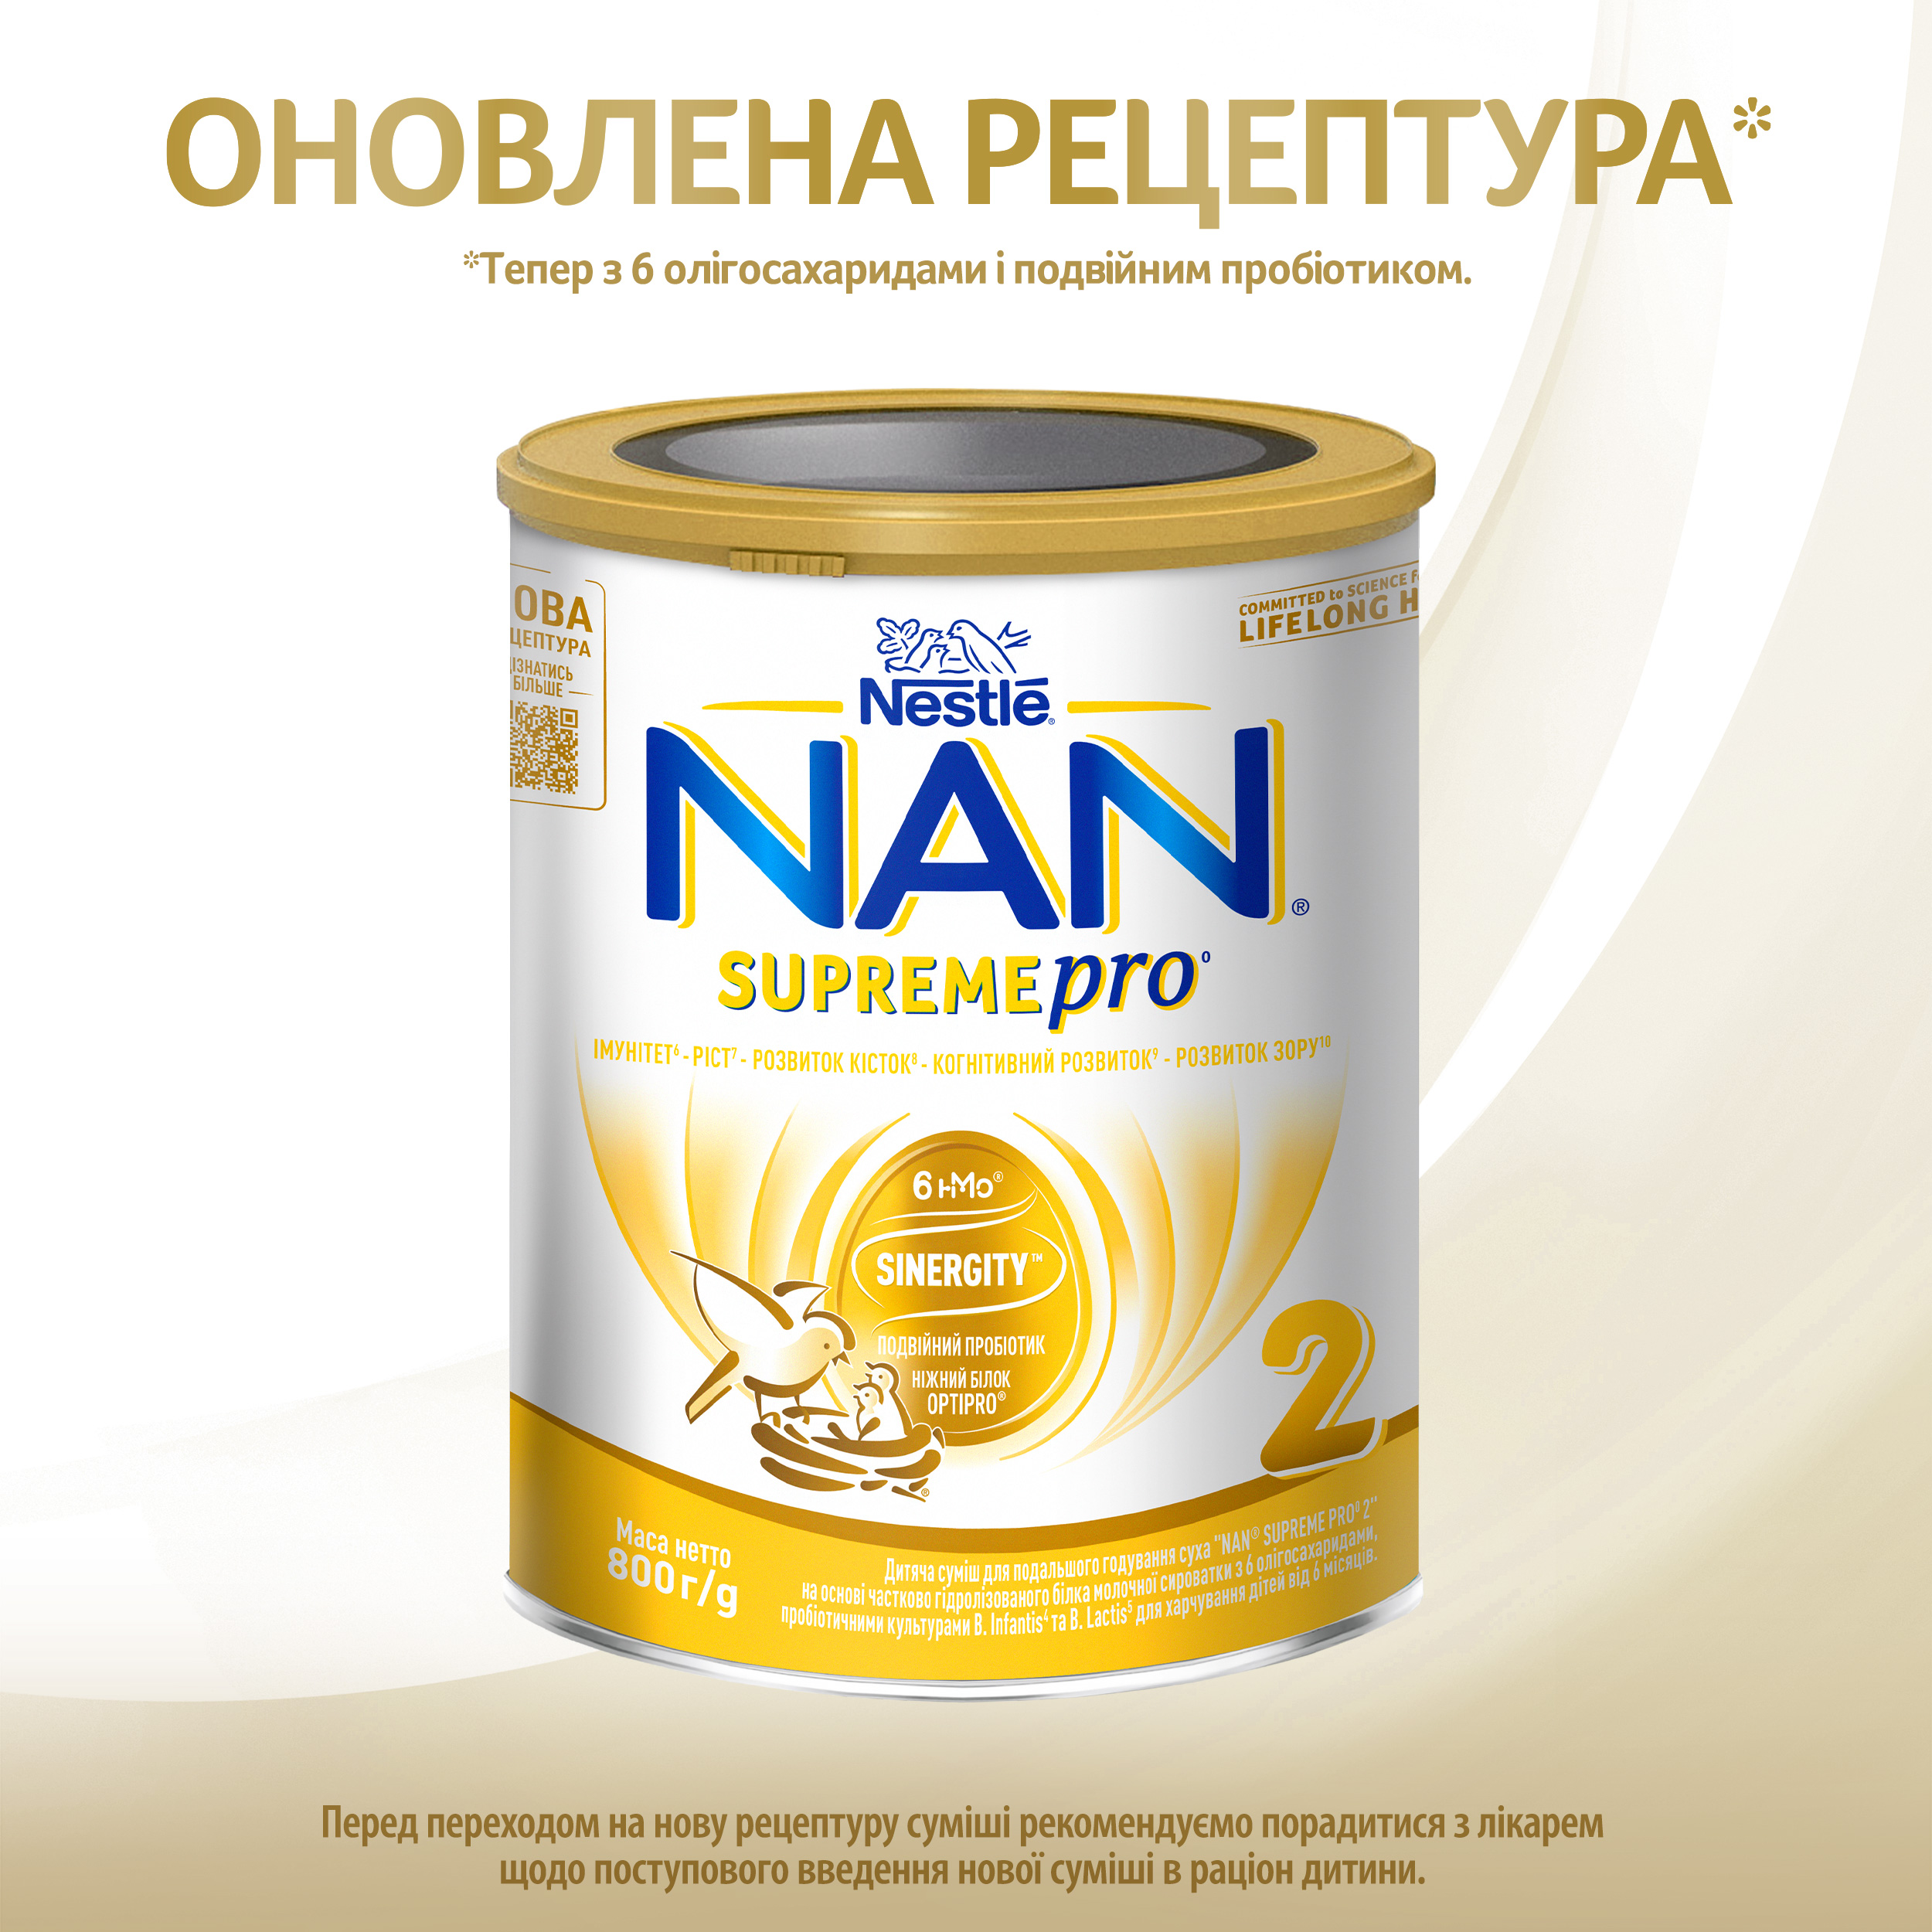 Суха молочна суміш NAN Supreme Pro 2, з олігосахаридами, 800 г - фото 2